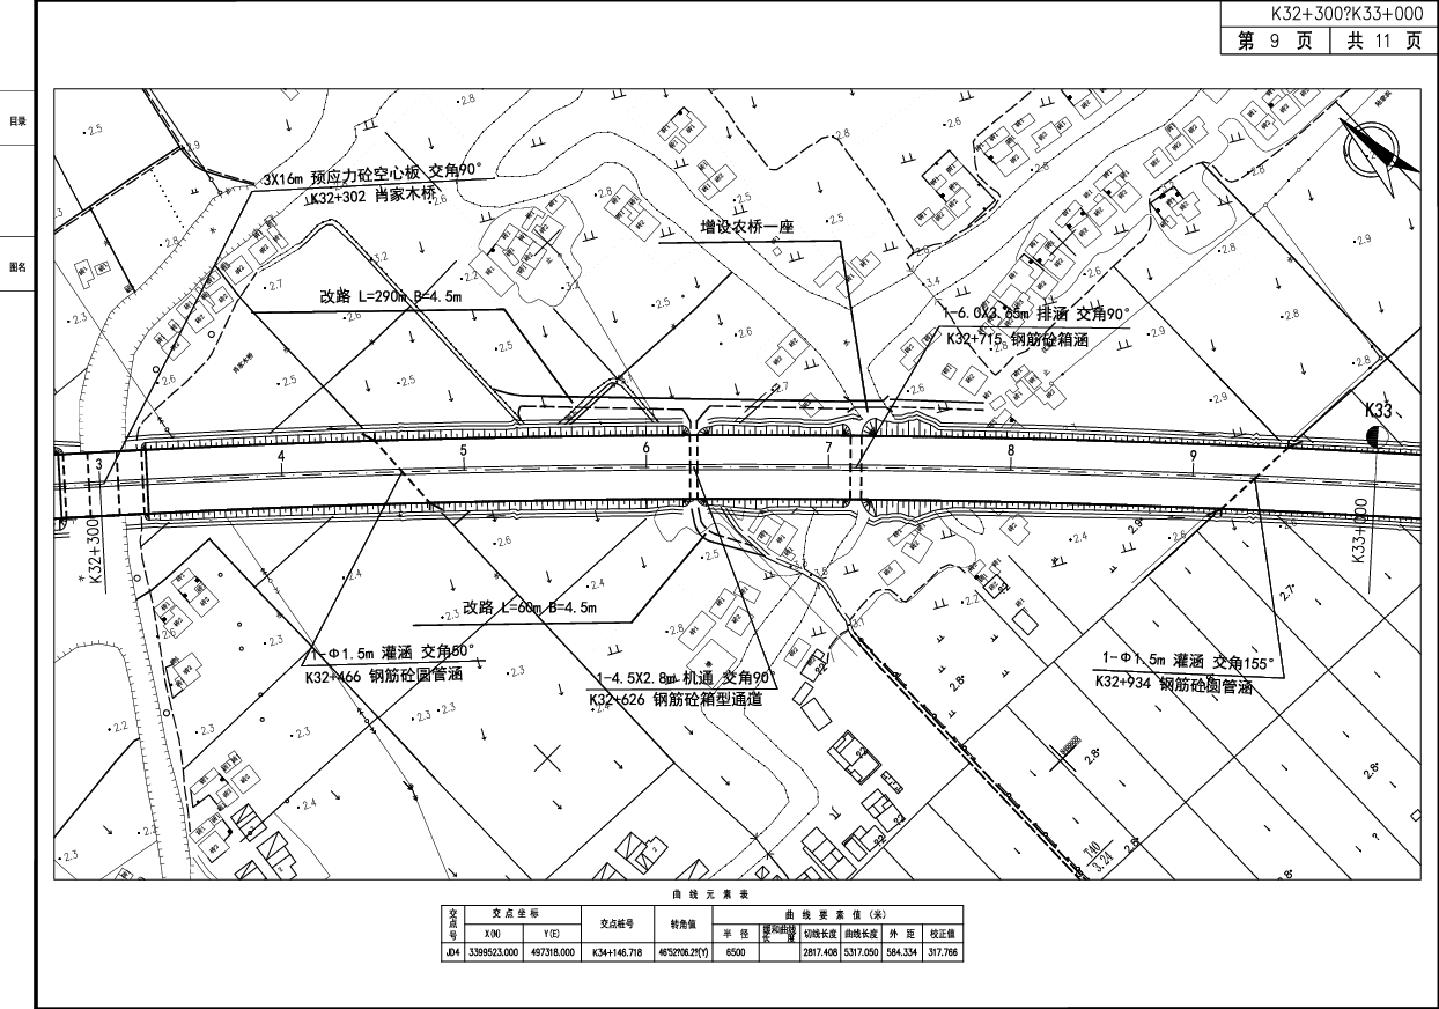 杭州湾跨海大桥北岸连接线工程第2合同总体设计图9CAD图.dwg